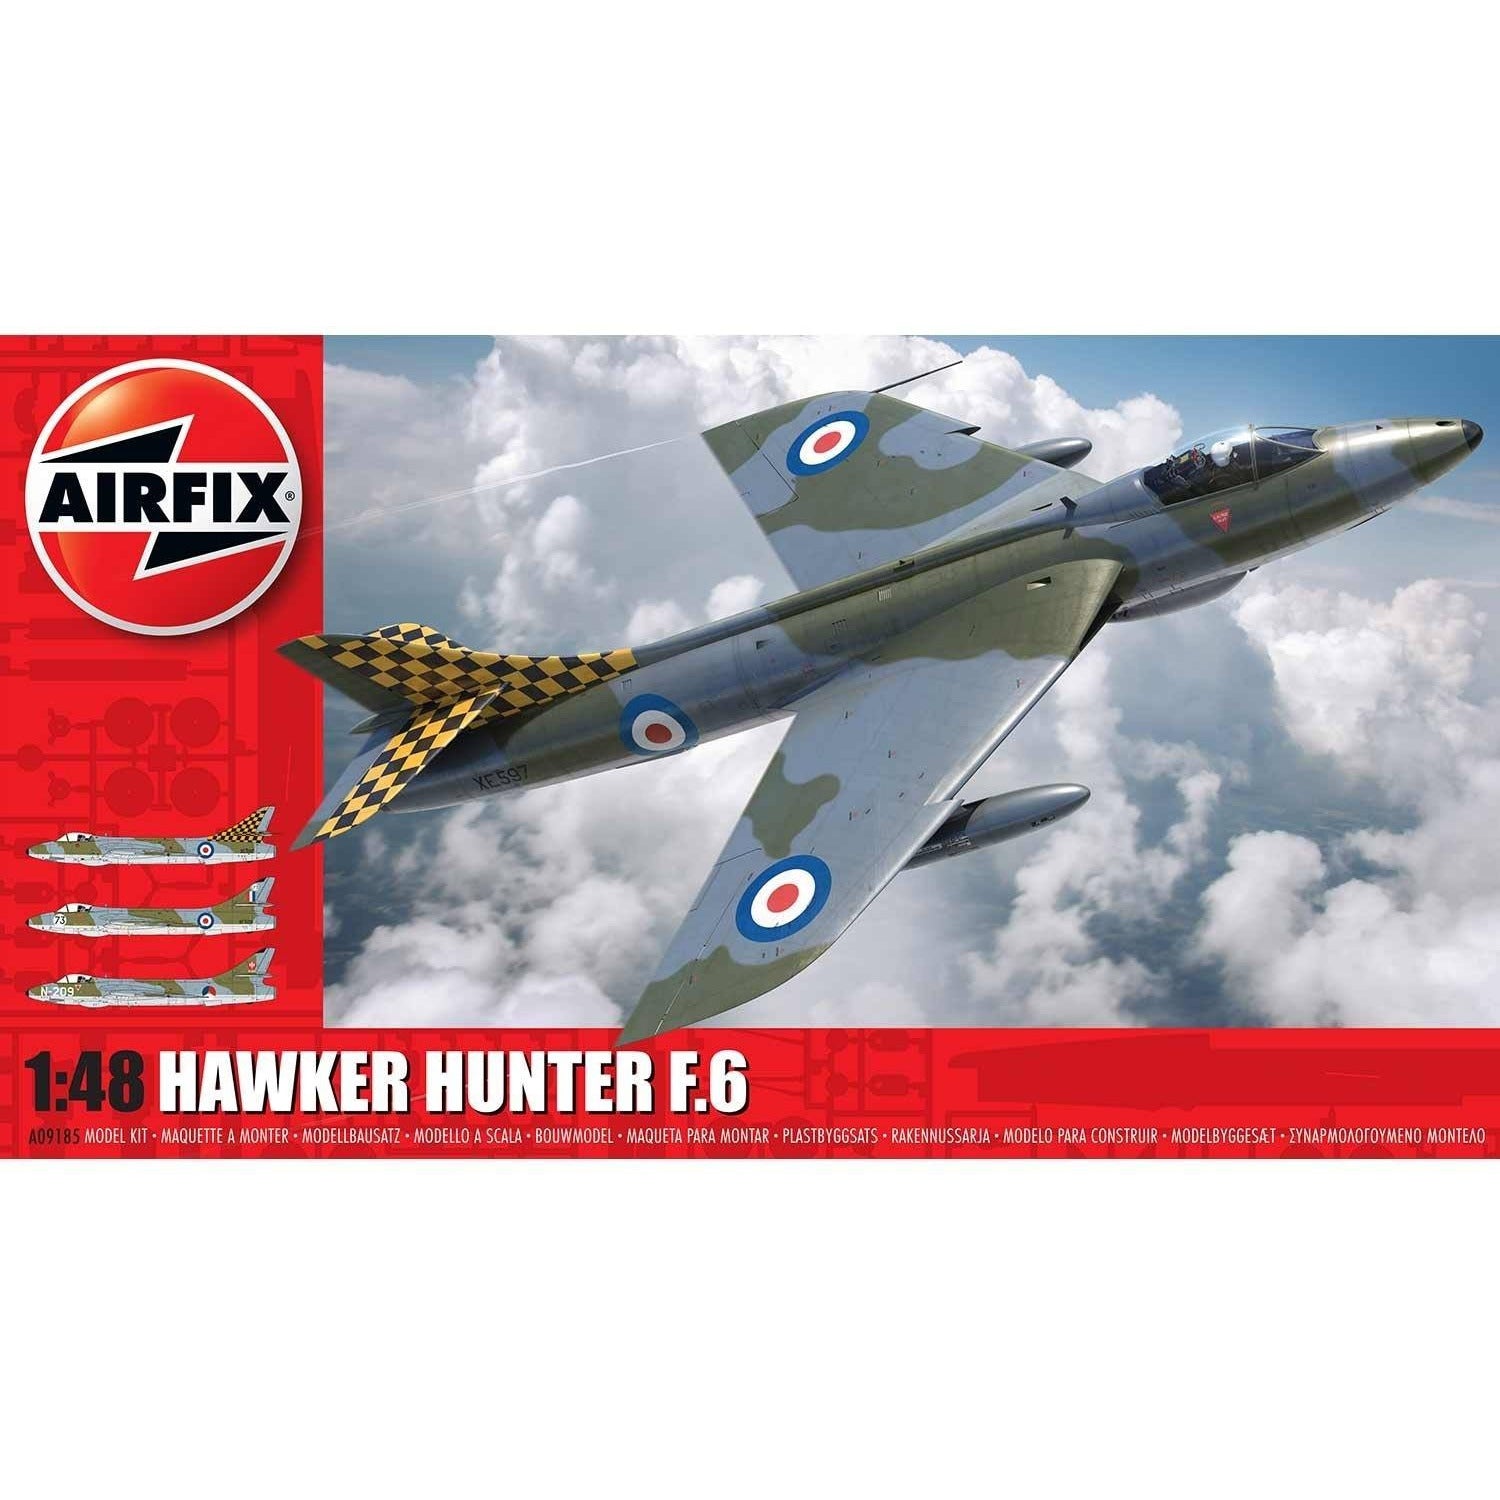 Hawker Hunter F6 1/48 by Airfix